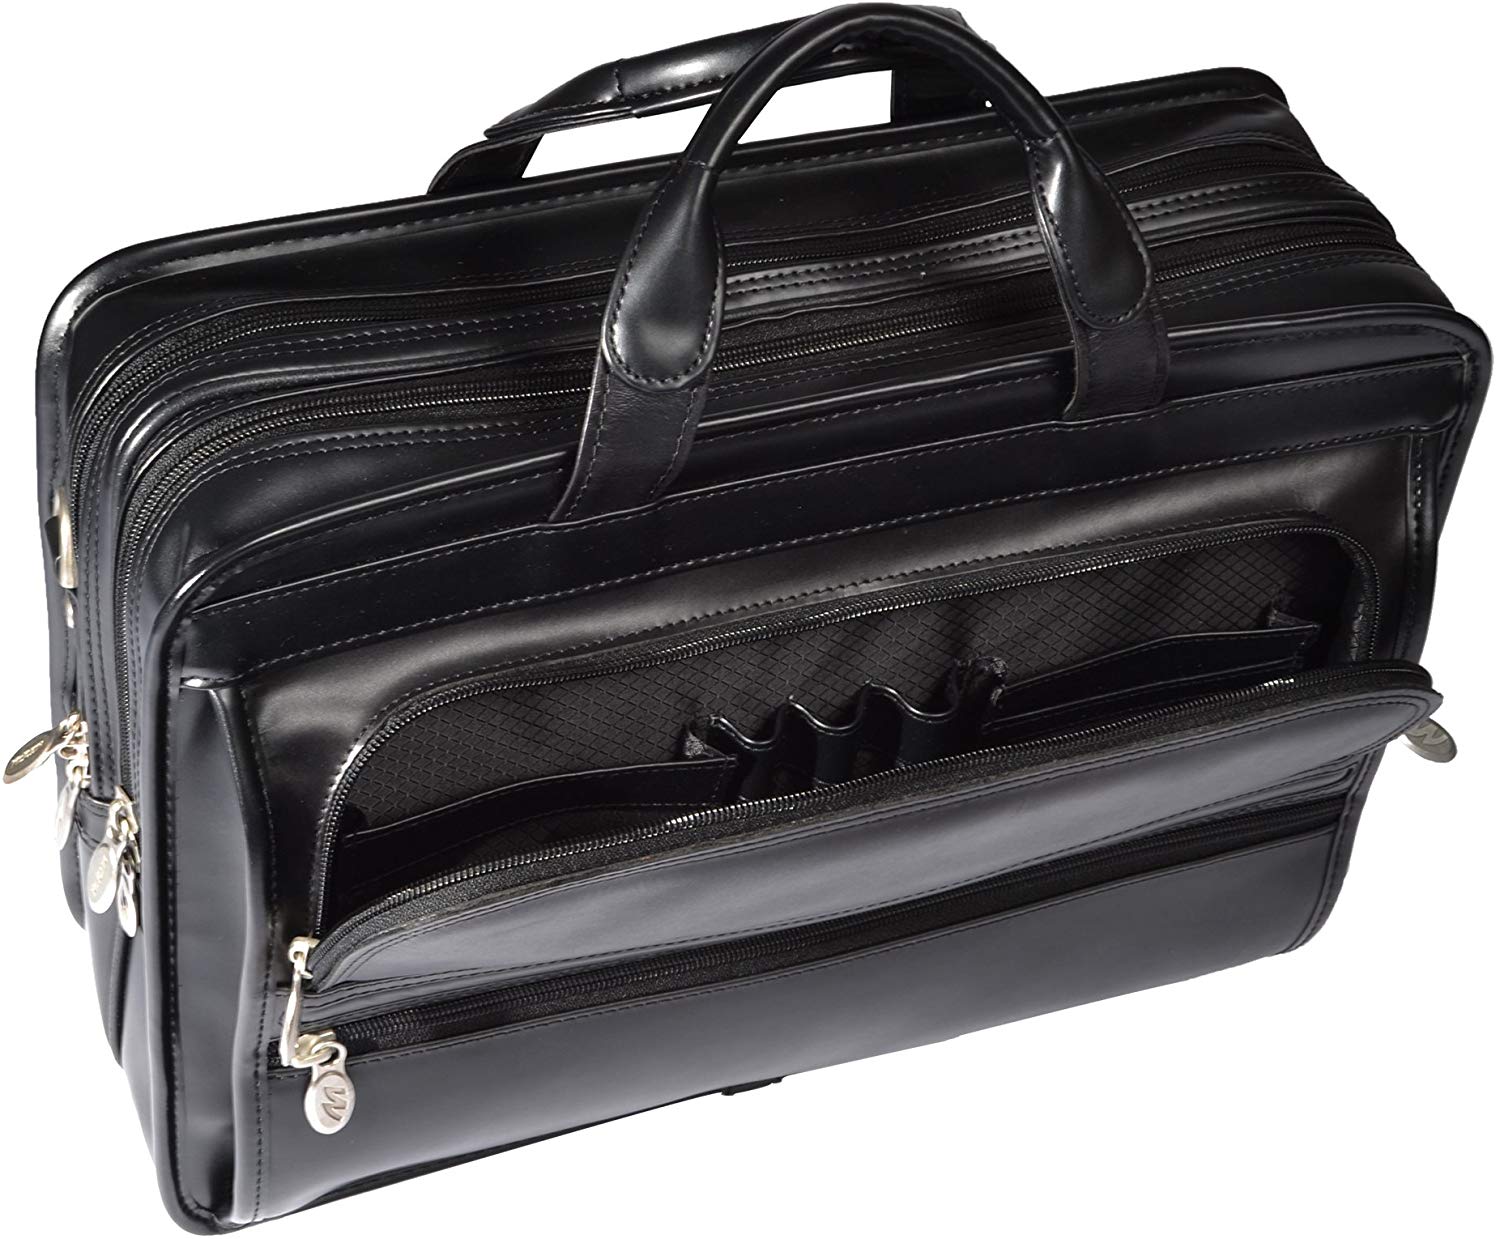 McKlein Elston Black Leather Double Compartment Laptop Case